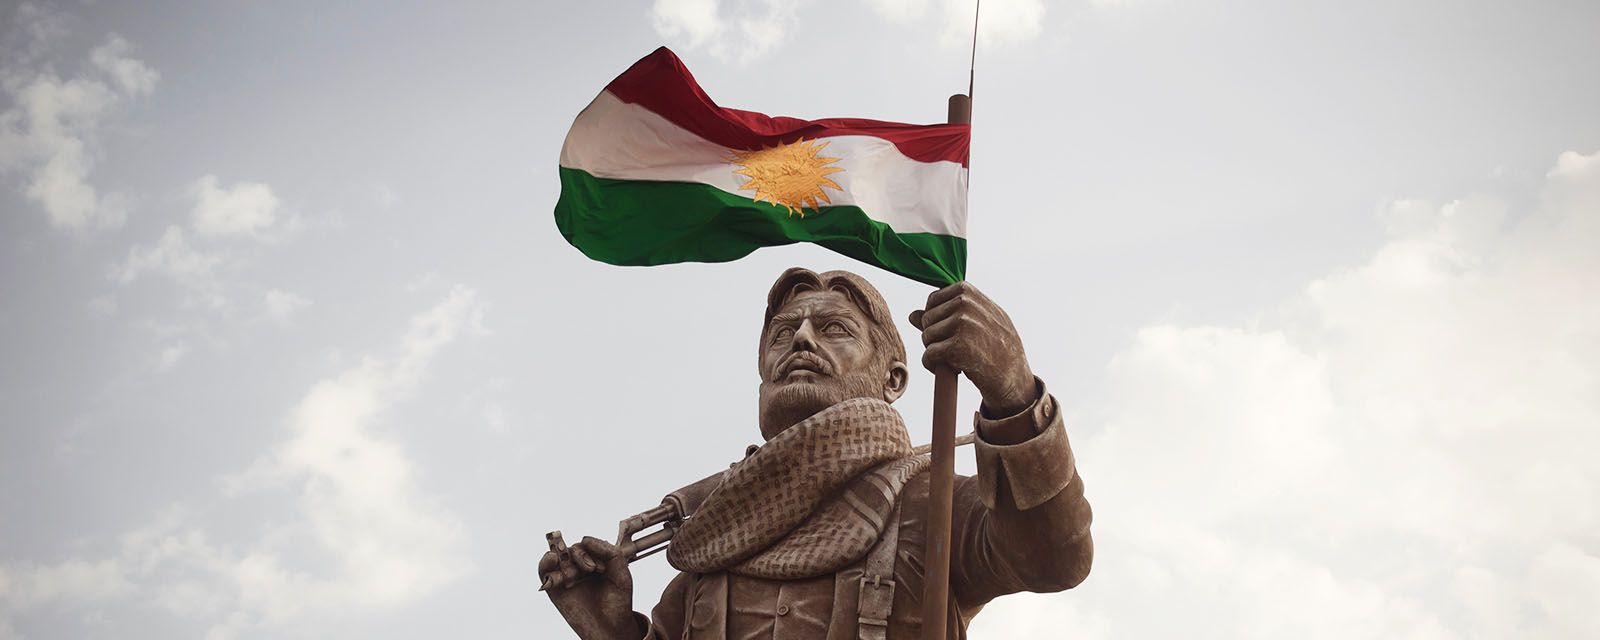 KURDISH PESHMERGA NOMINATED FOR NOBEL PEACE PRIZE